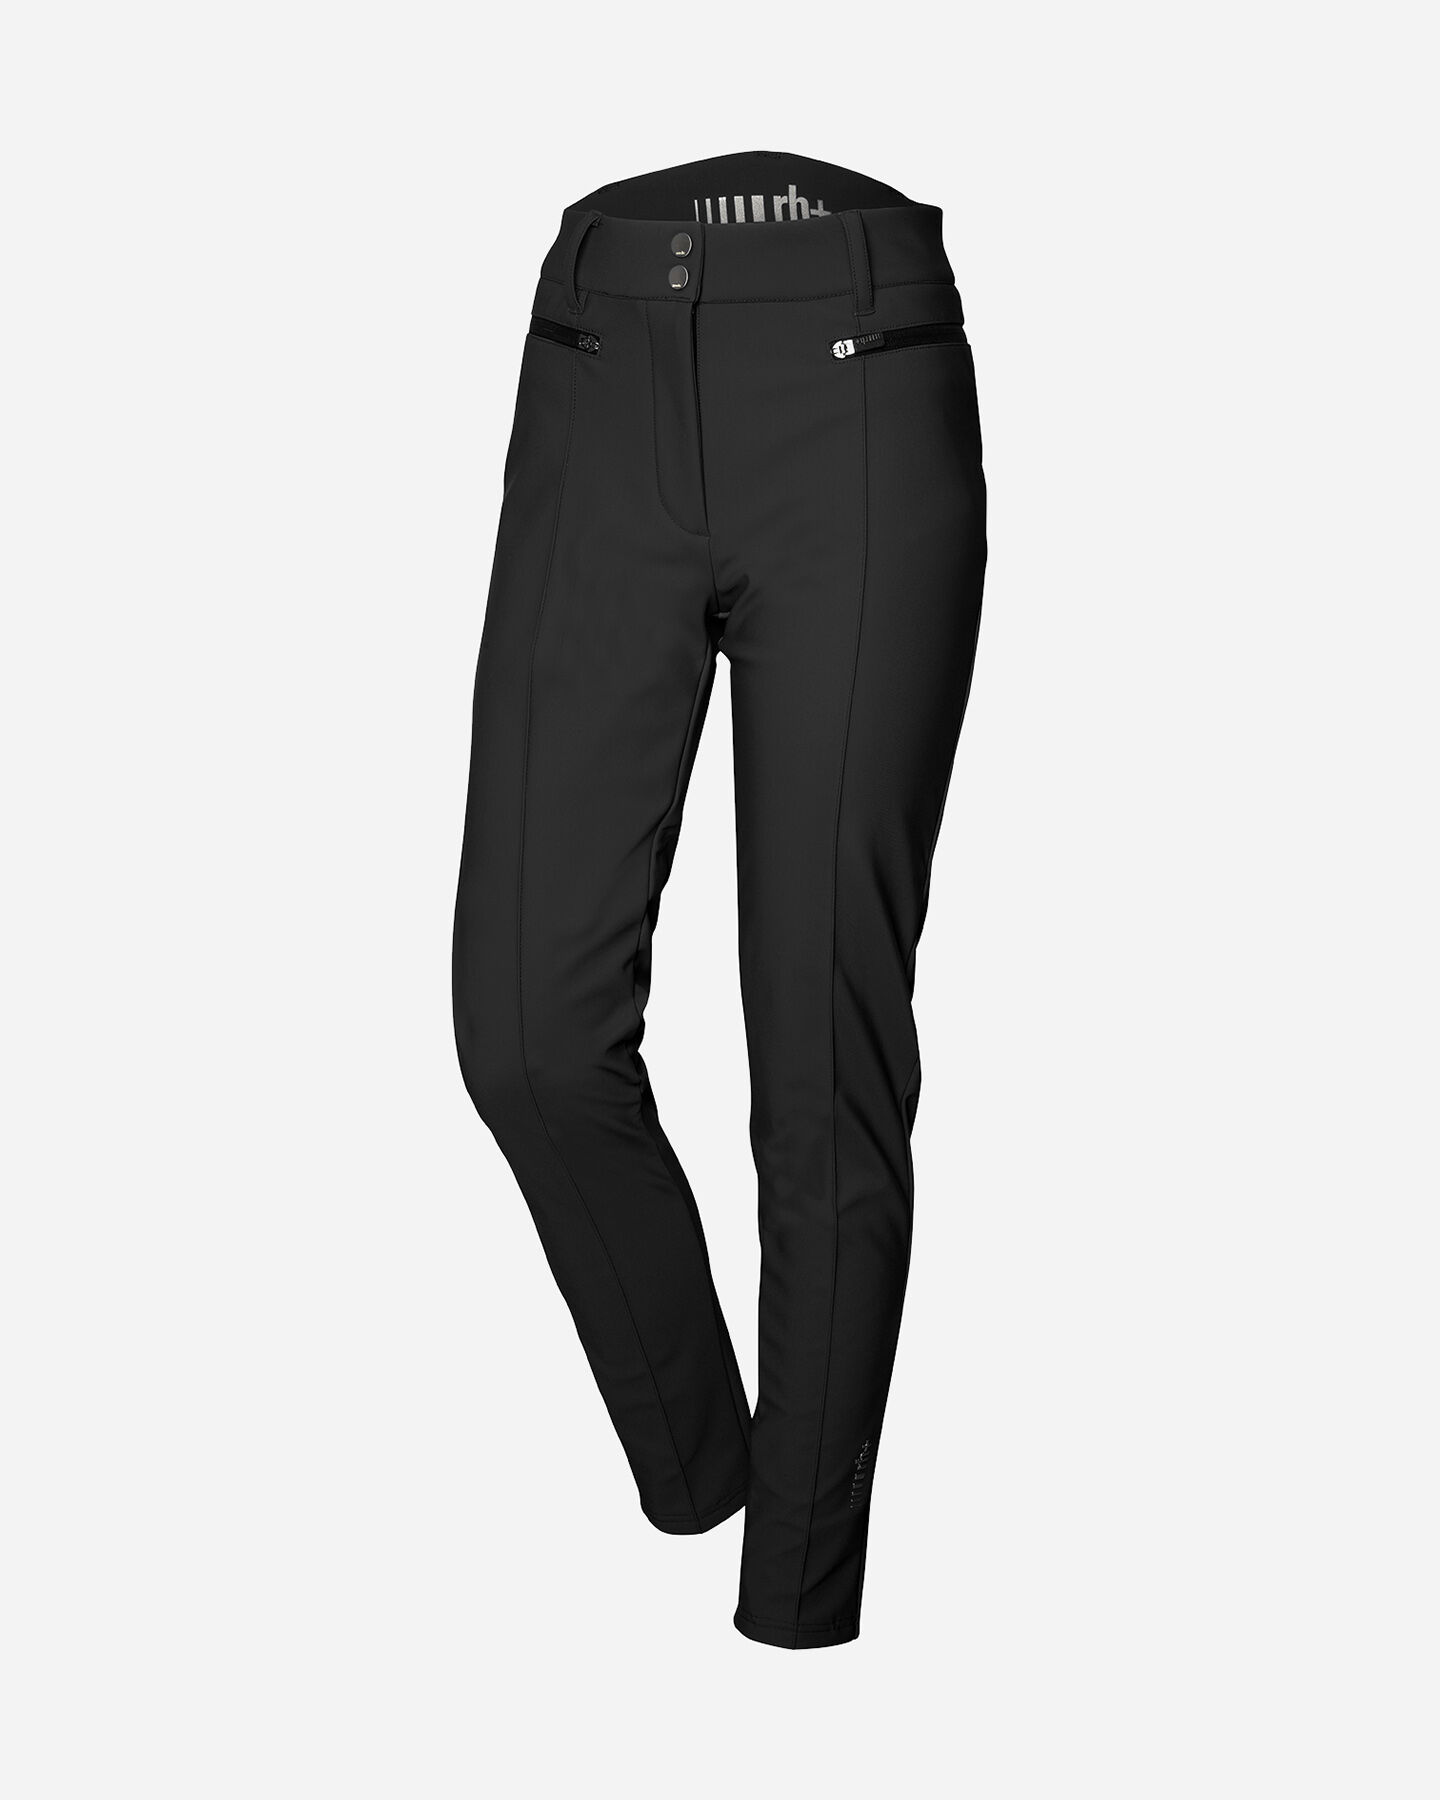  Pantalone sci RH+ HIGH RISE W S4116471|900|S scatto 0